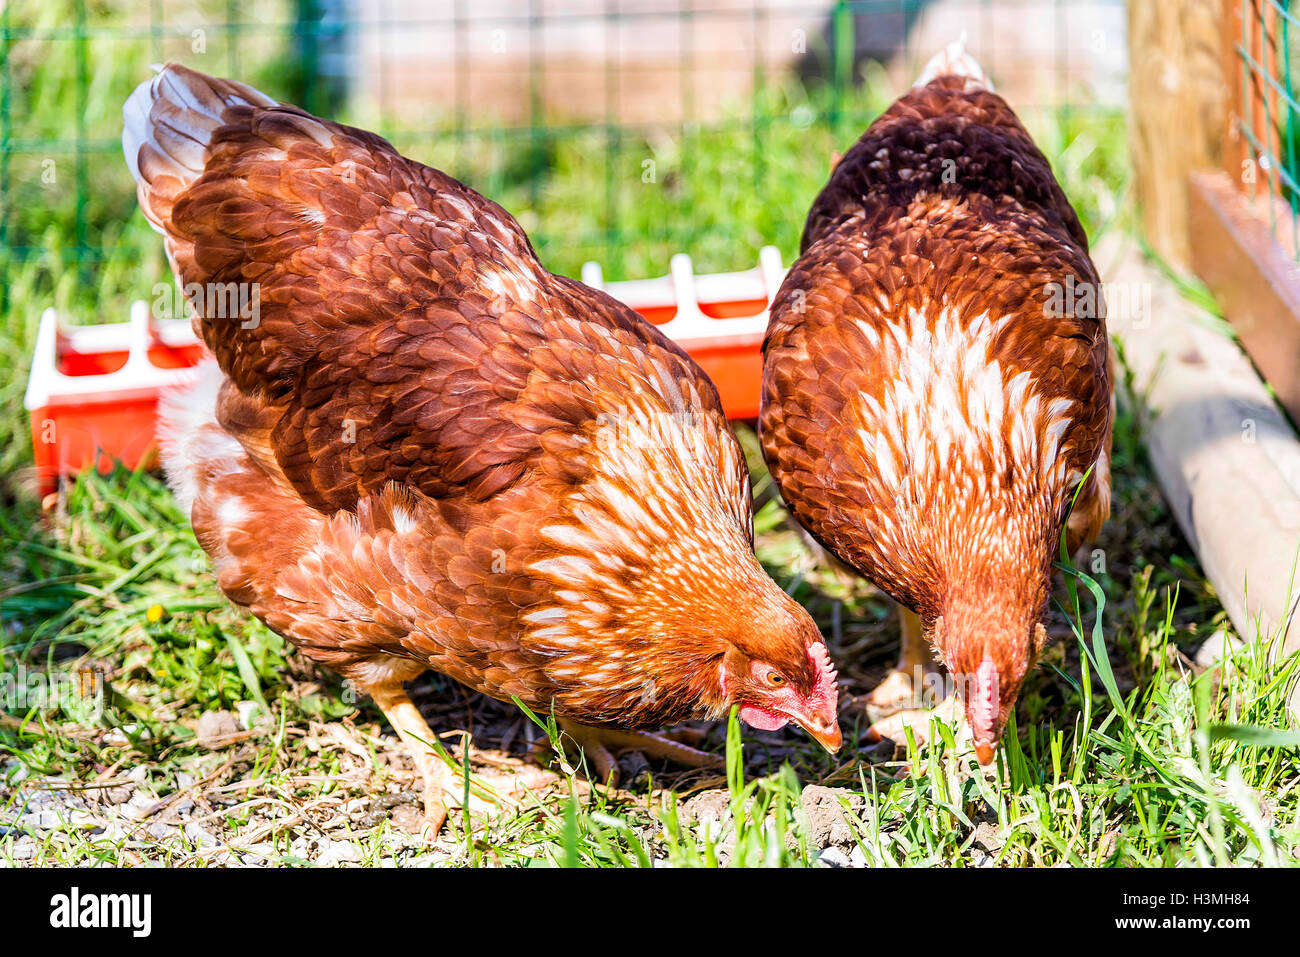 Dos pollos marrón curioso buscando alimento. El pollo es una de las más comunes de animales domésticos Foto de stock